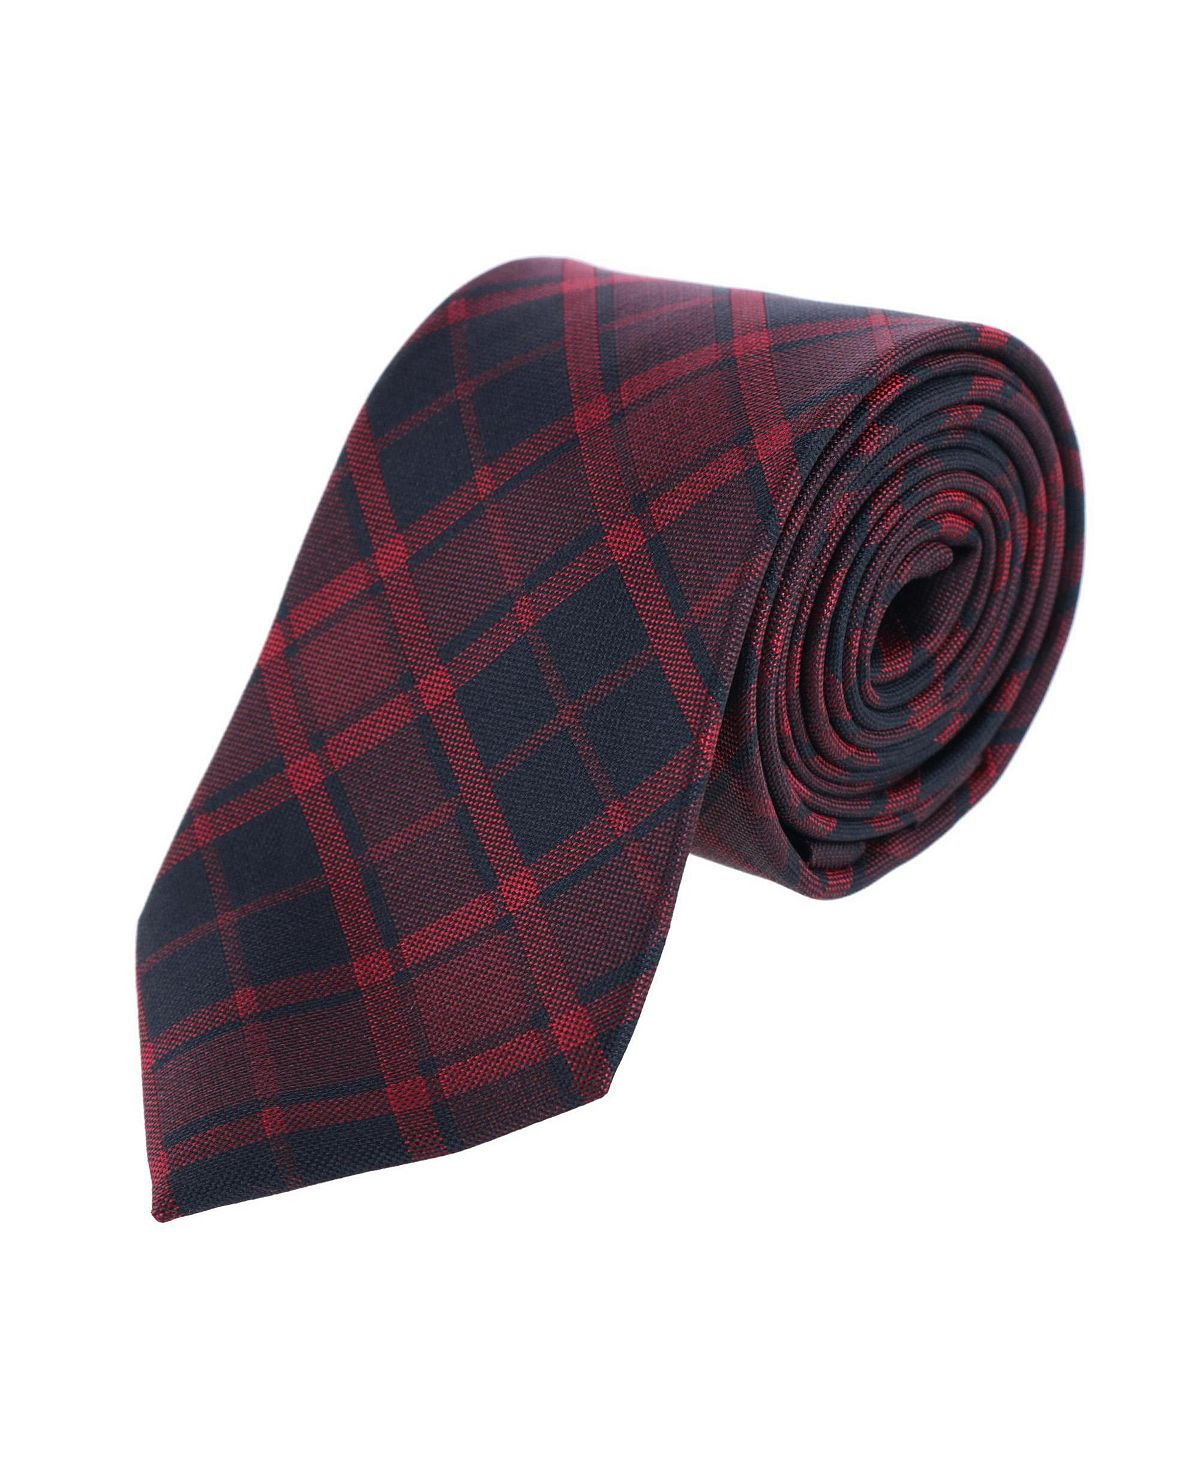 шелковый мужской галстук hi tie красный фиолетовый Красный шелковый галстук в клетку Kincade Blackwatch TRAFALGAR